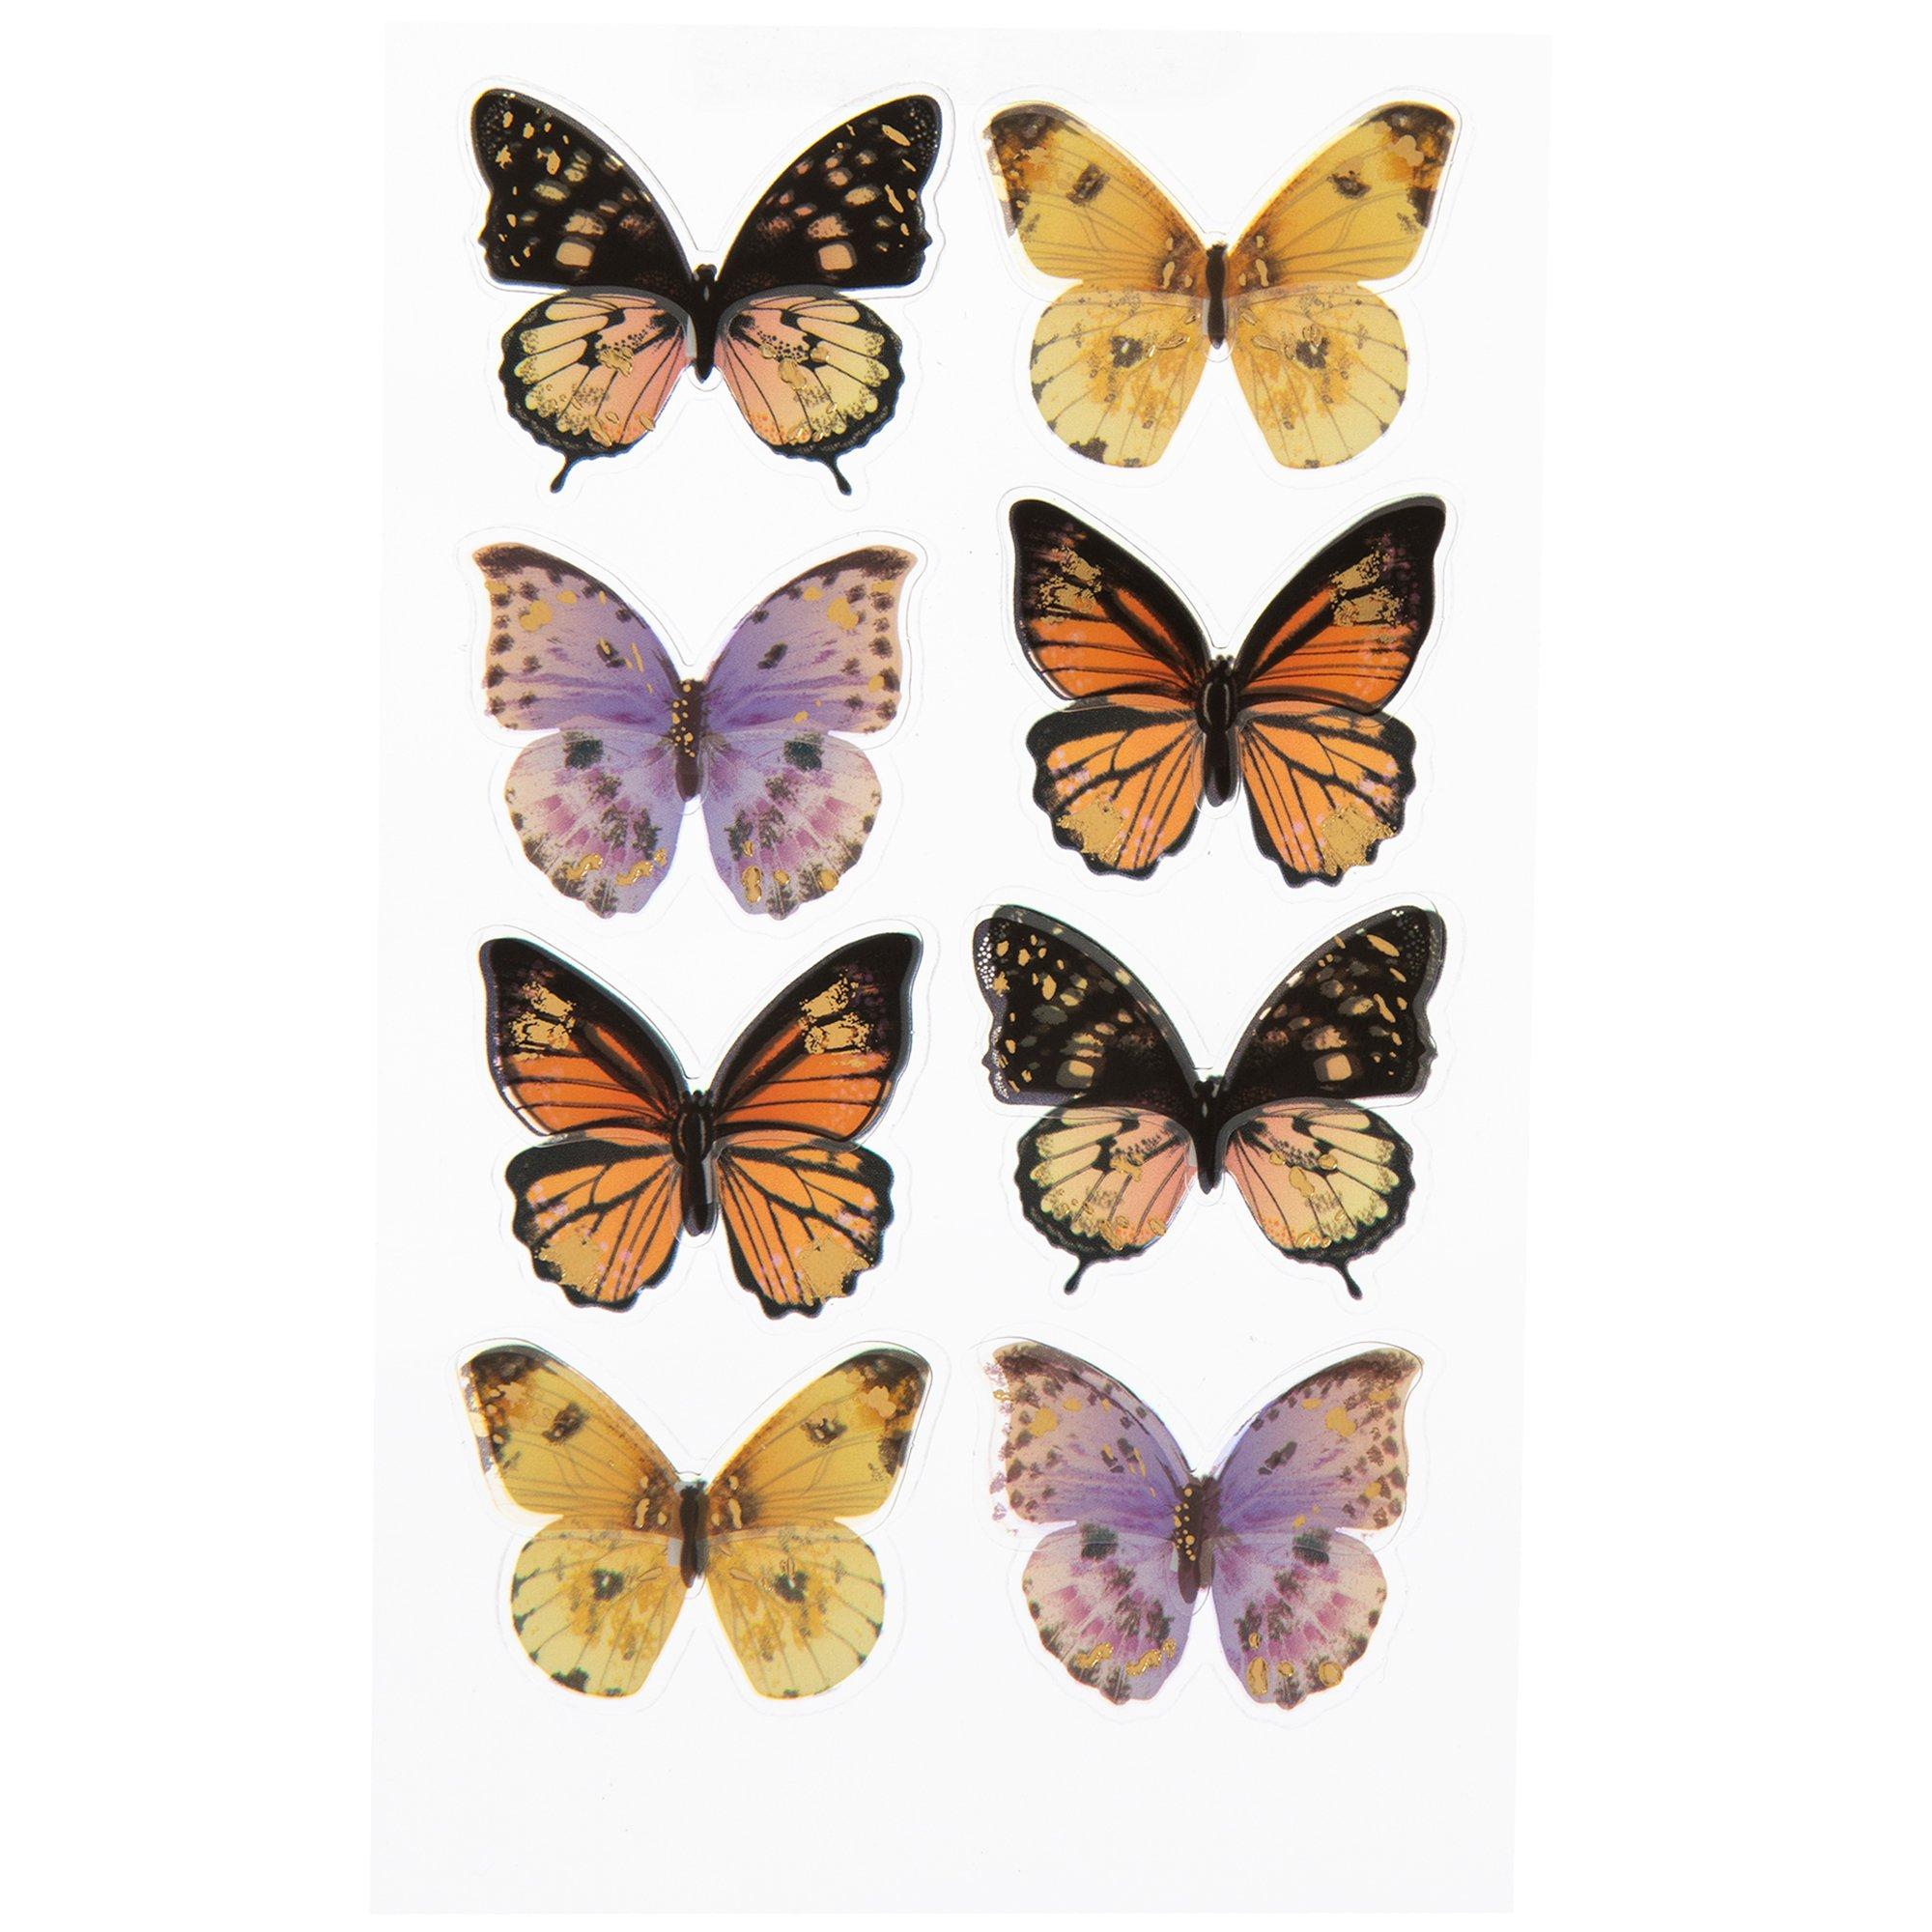 Glitter 3D Butterfly Stickers - 2 Styles